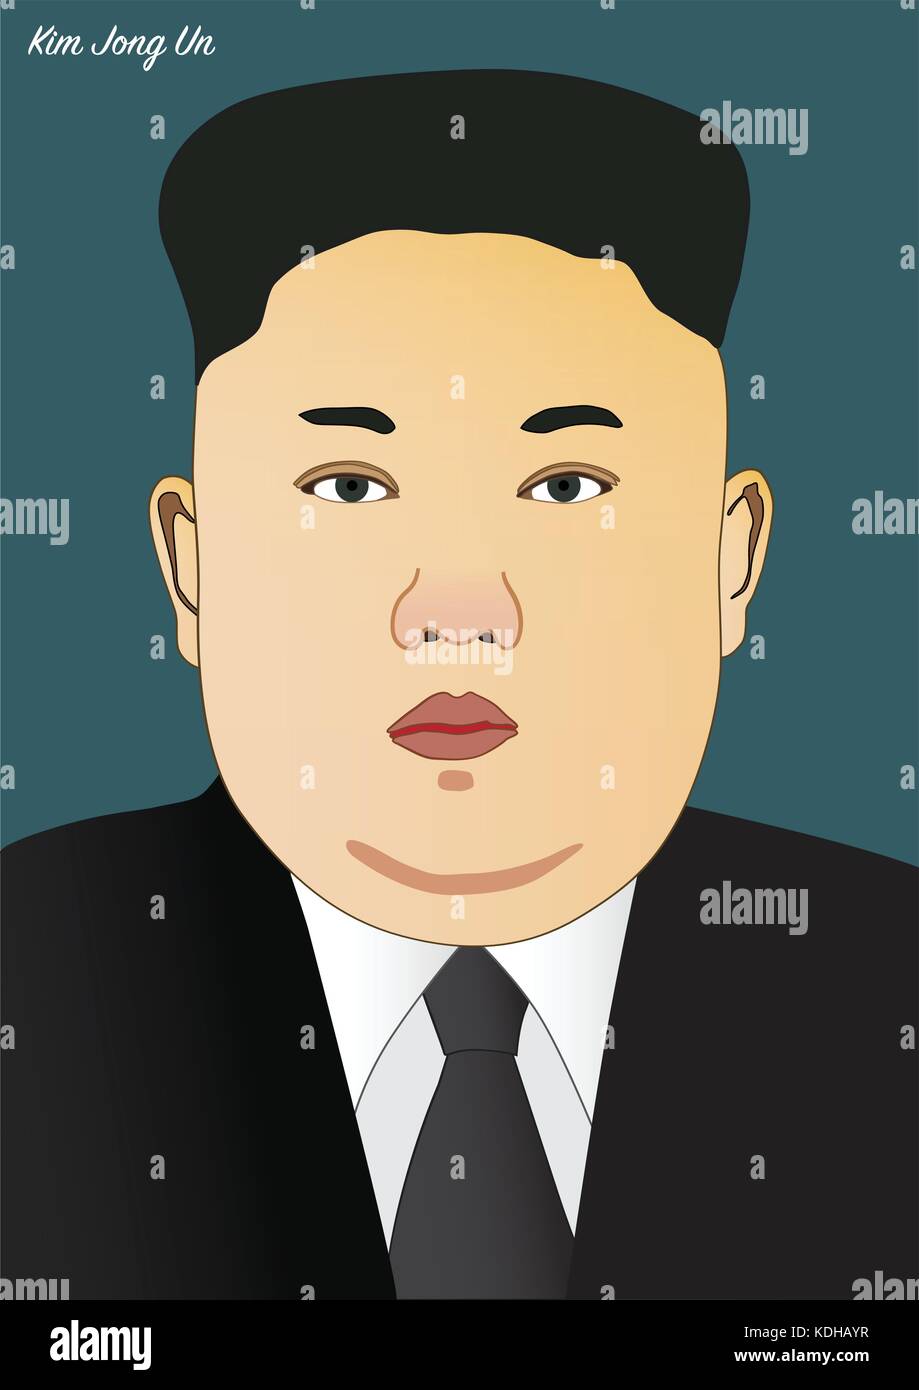 Kiev/Ukraine - October 14, 2017: Vector portrait of Kim Jong Un, Leader of North Korea Stock Vector